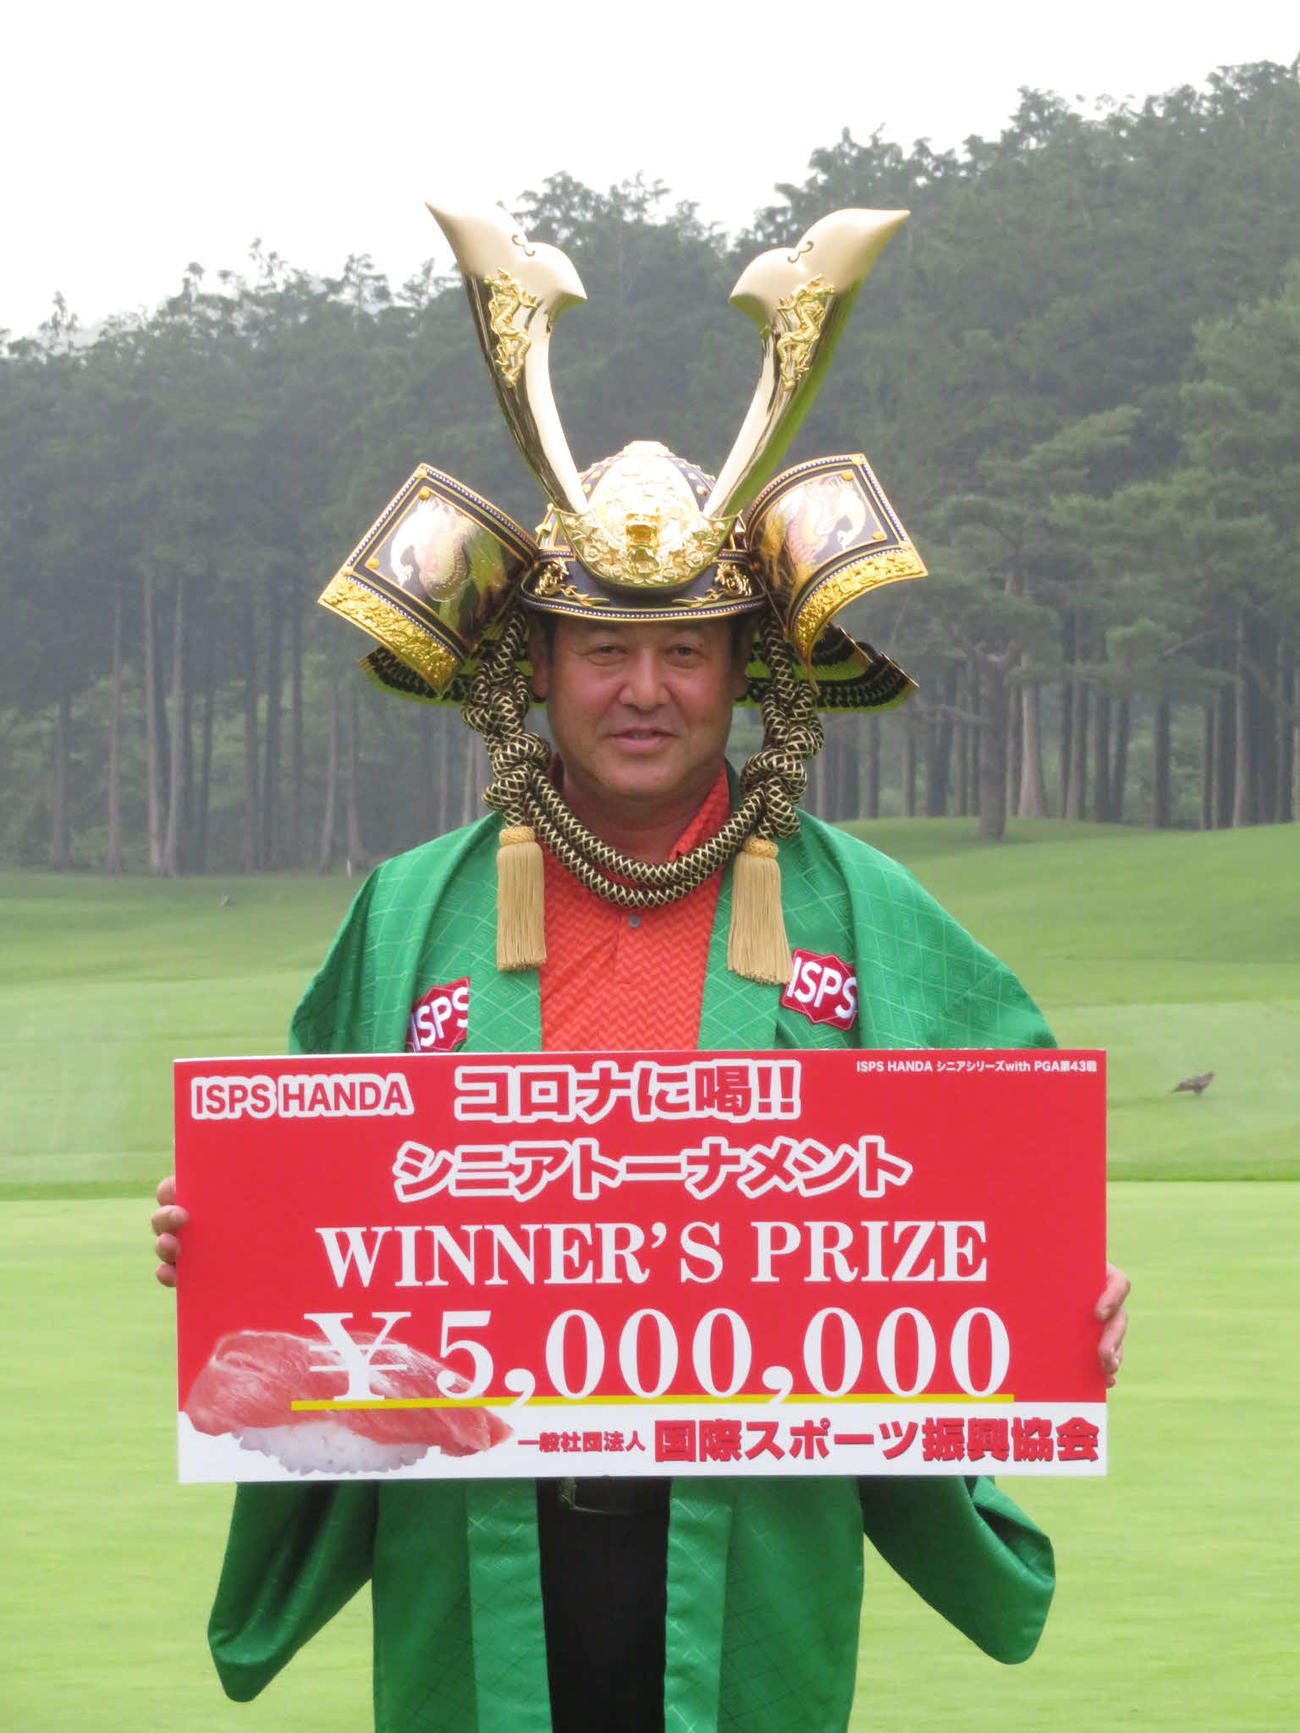 優勝賞金500万円のボードを手に、かぶとを着けて笑顔を見せる柳沢